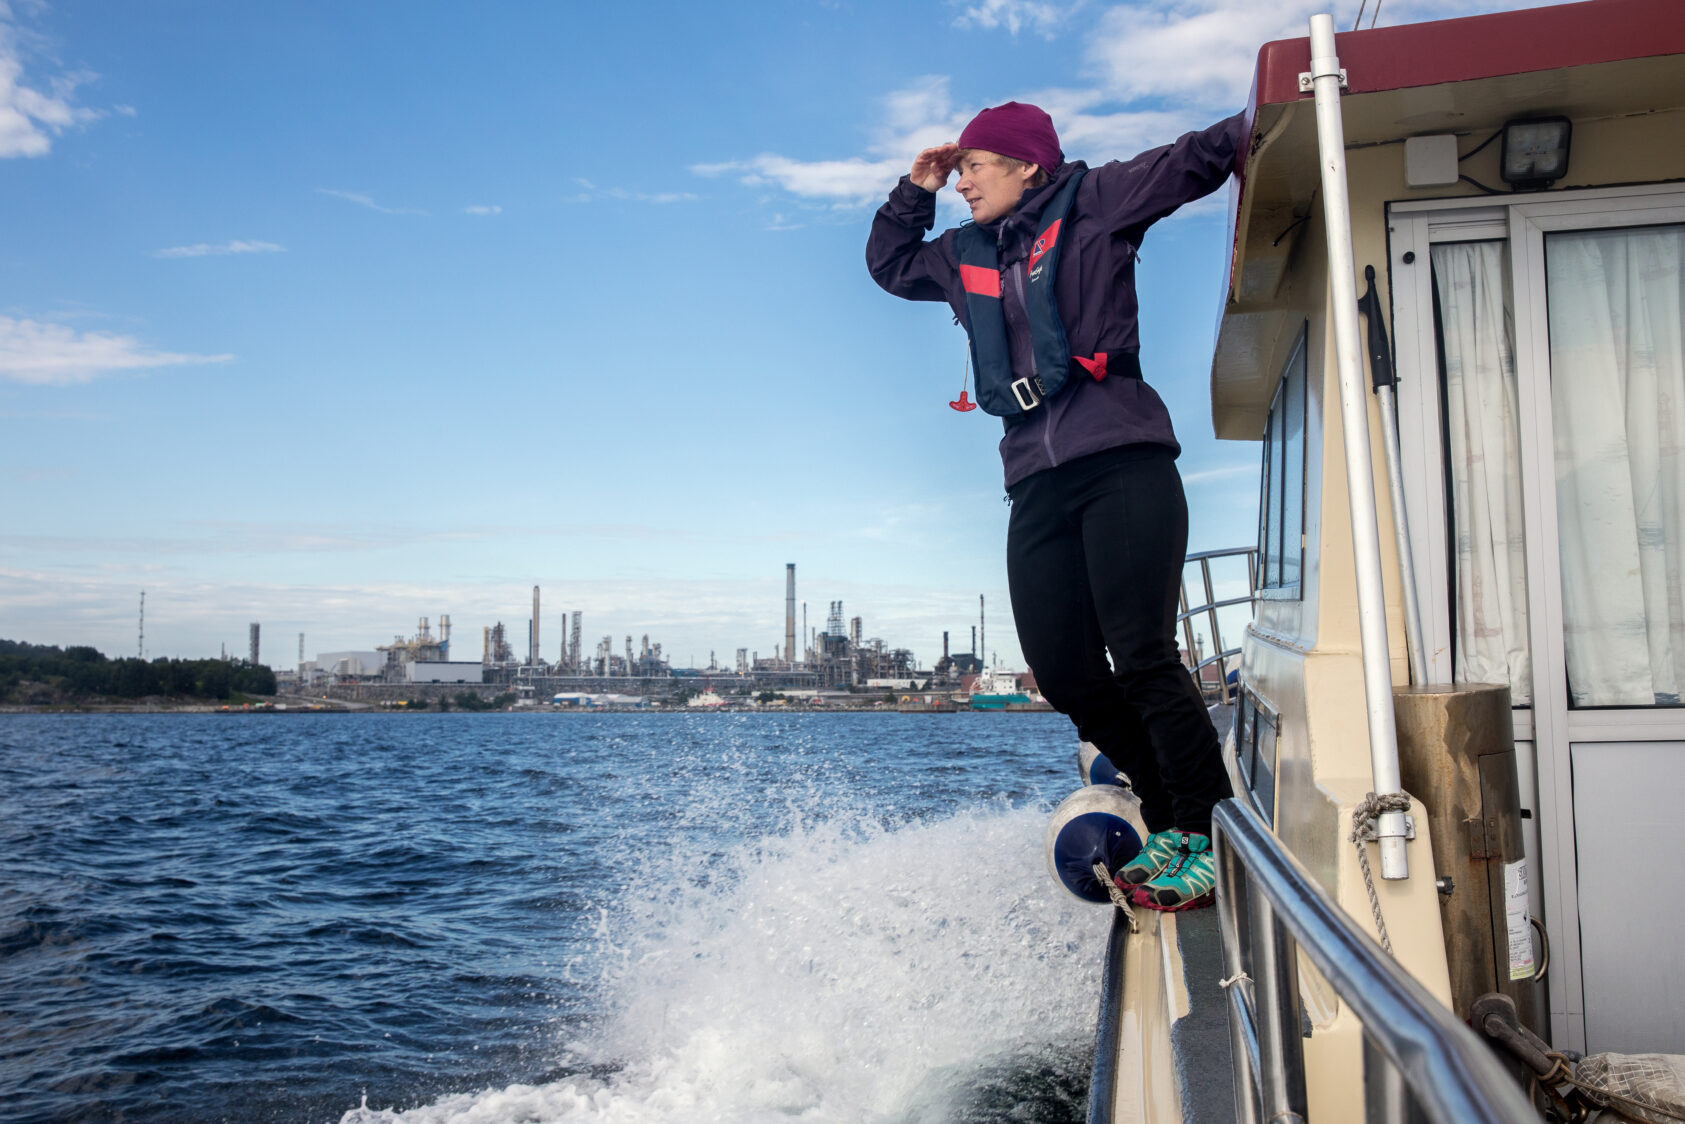 Eivind Senneset, I Norge er det mulig å lagre store mengder CO₂ under havbunnen på norsk sokkel., Kirsti Midttømme på en båt, <p>Eivind Senneset</p>, Dame står på en båt og ser utover sjøen.